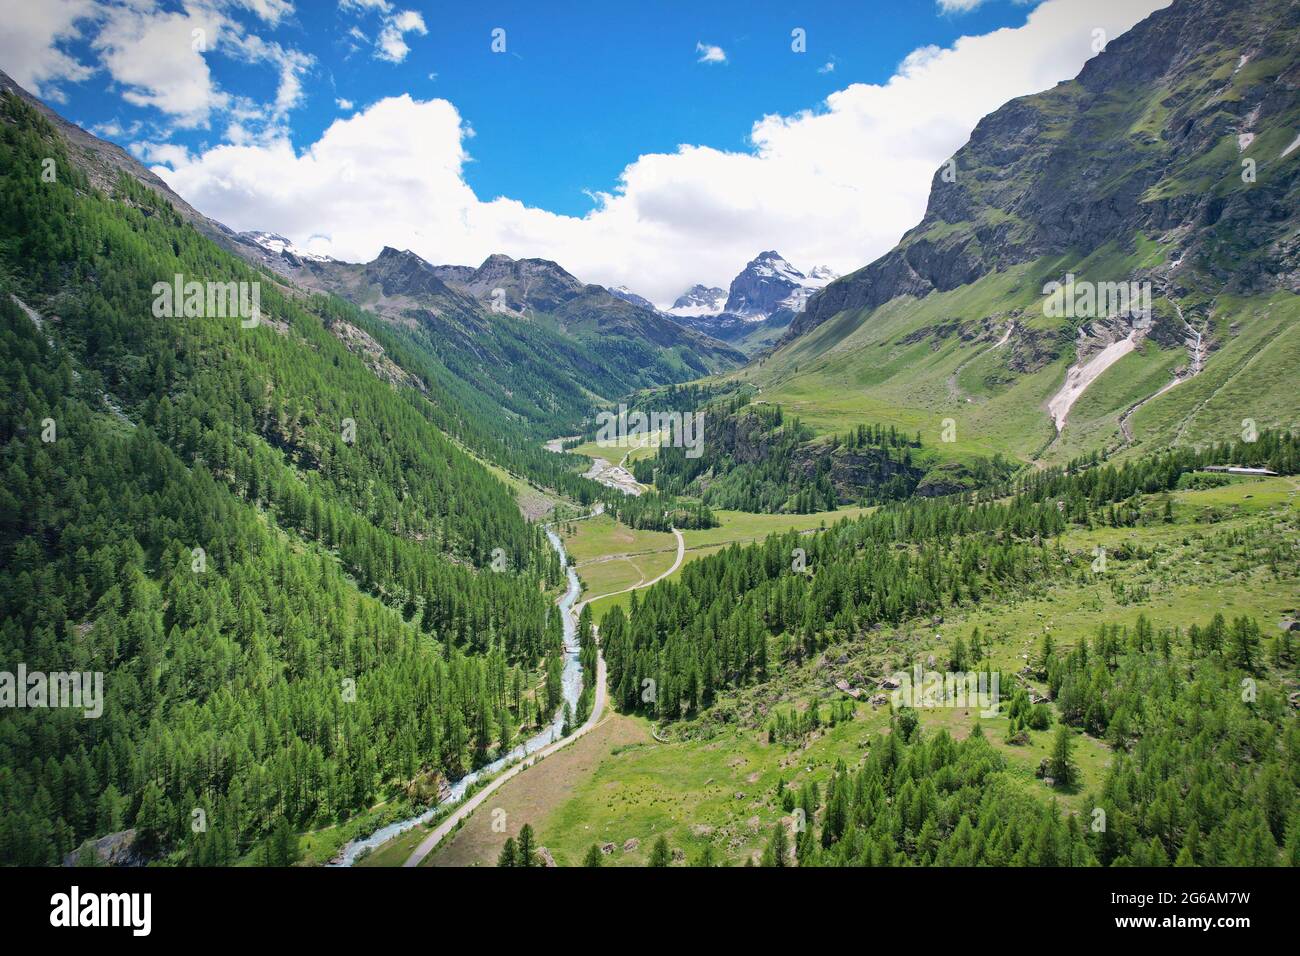 Vista desde la cima del valle de Notre Dame de Rhemes en el valle de Aosta, Italia. Foto de stock